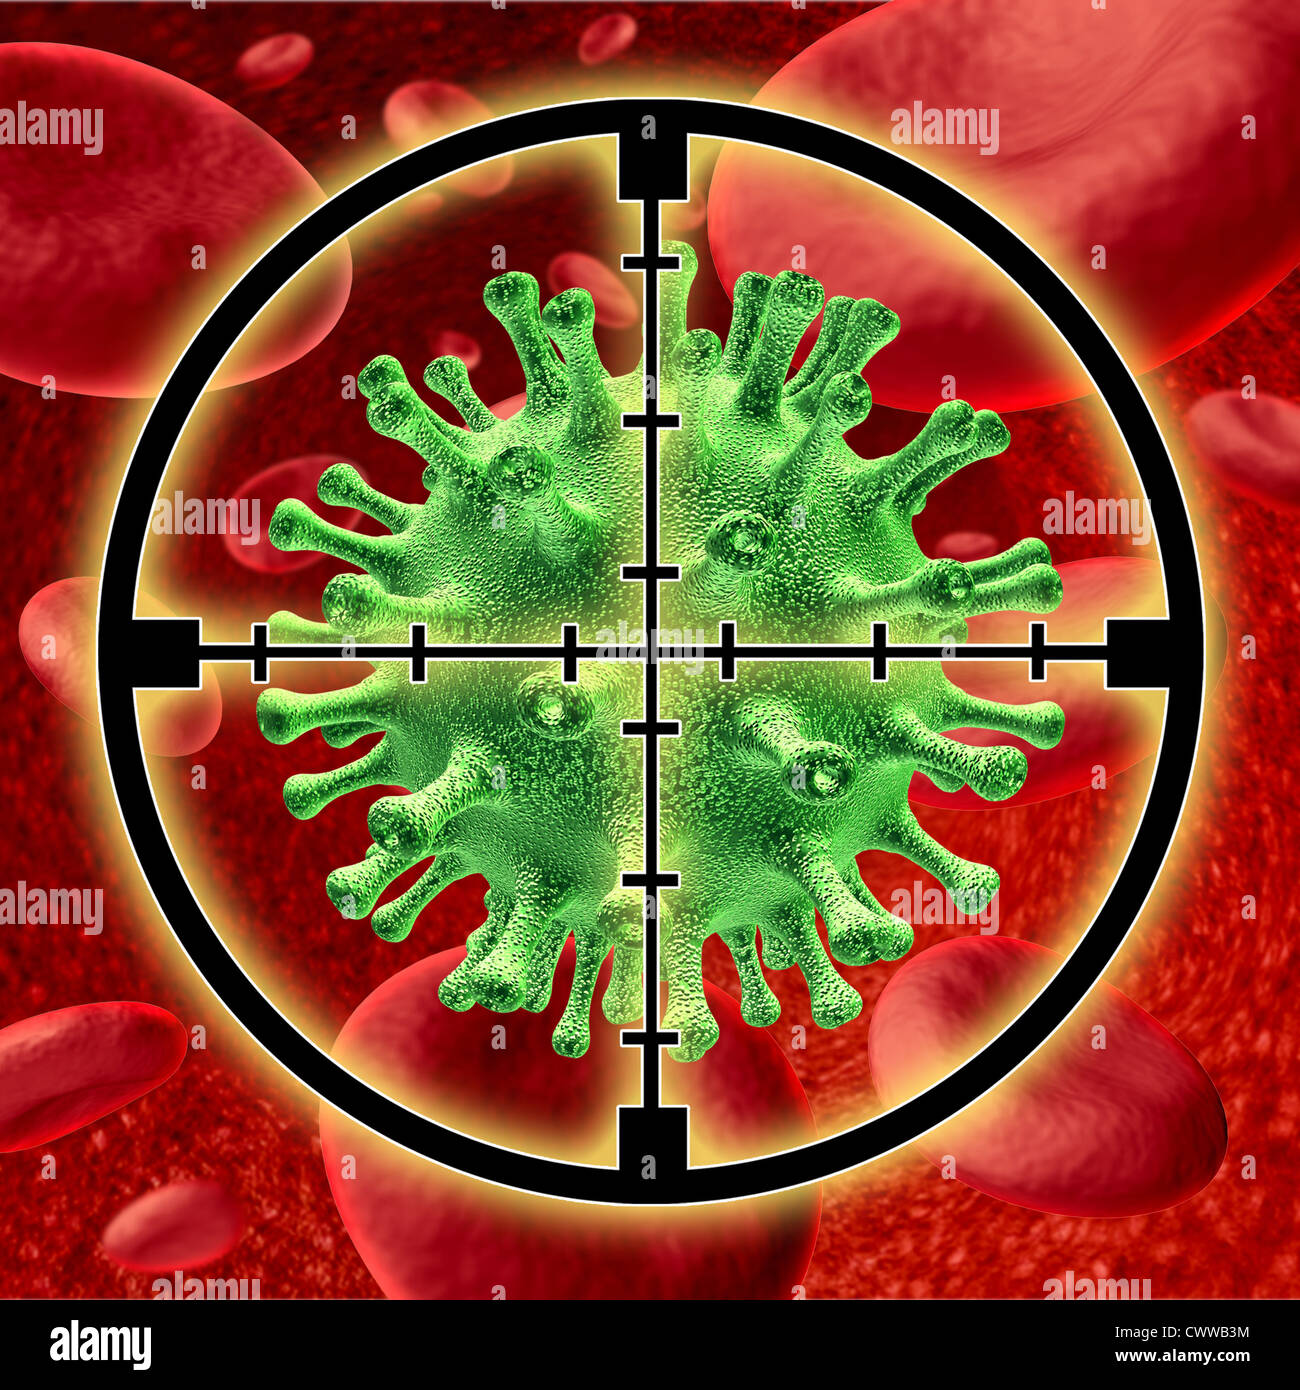 Töten einen Virus Symbol vertreten durch Blutzellen wird von einer Krankheit befallen und gezielt durch Fadenkreuz, den Patienten von der Krankheit zu heilen. Stockfoto